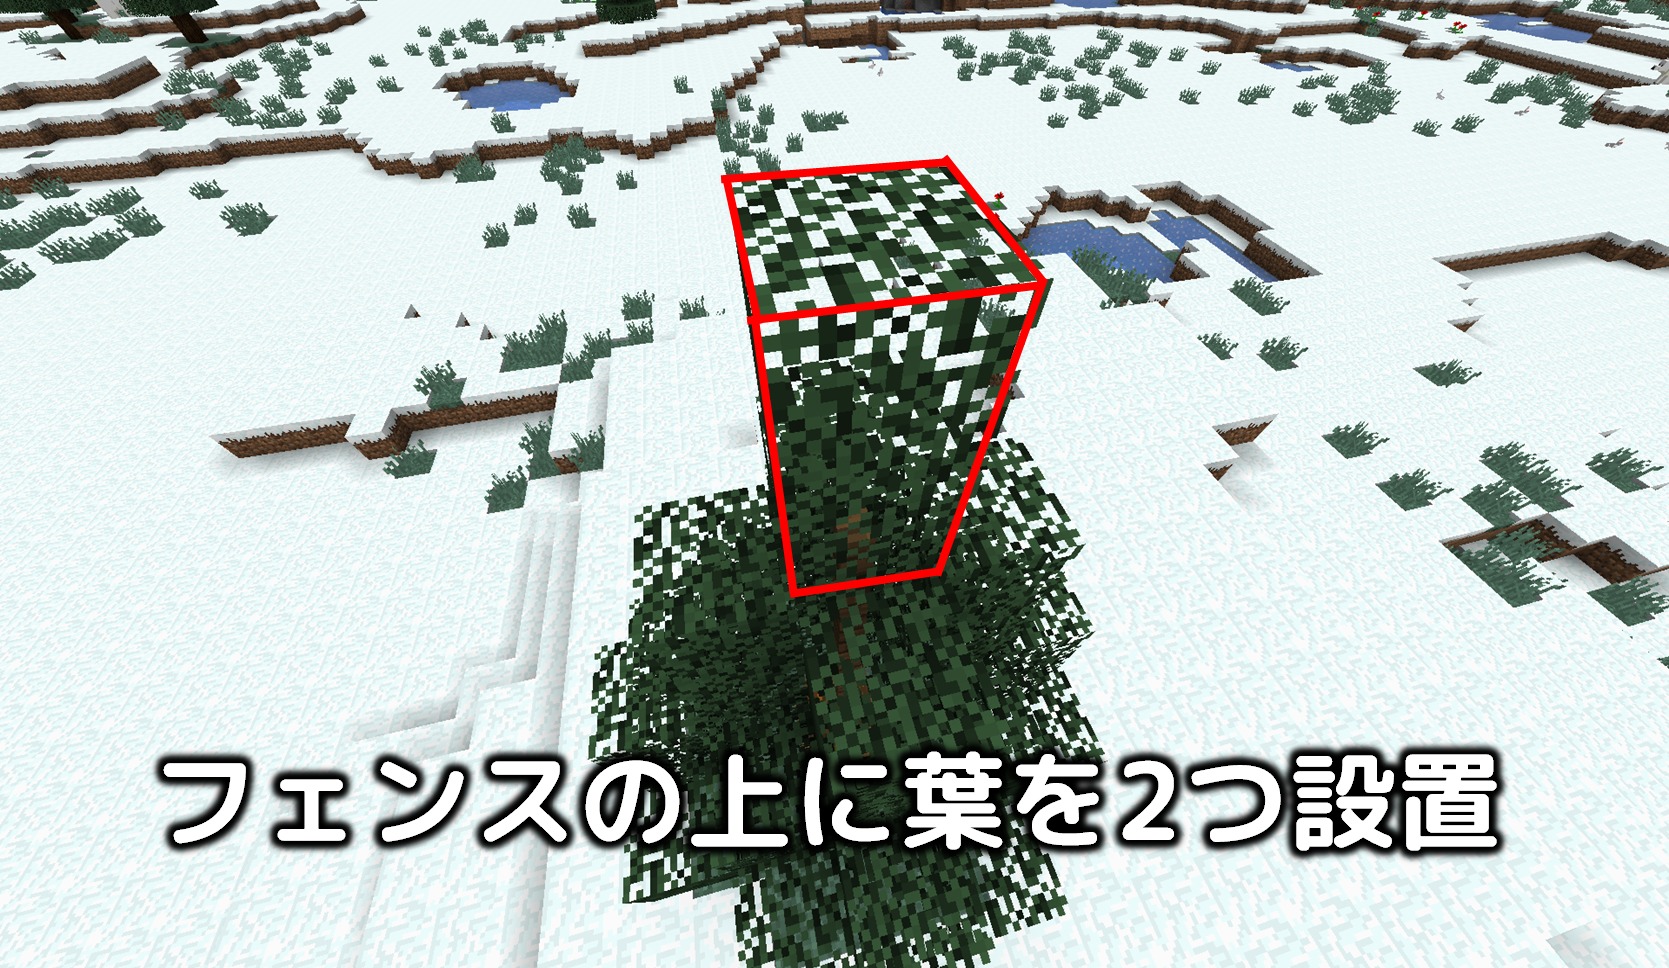 マイクラ 5分で作れるクリスマスツリーの作り方 Taiharuのマイクラ攻略